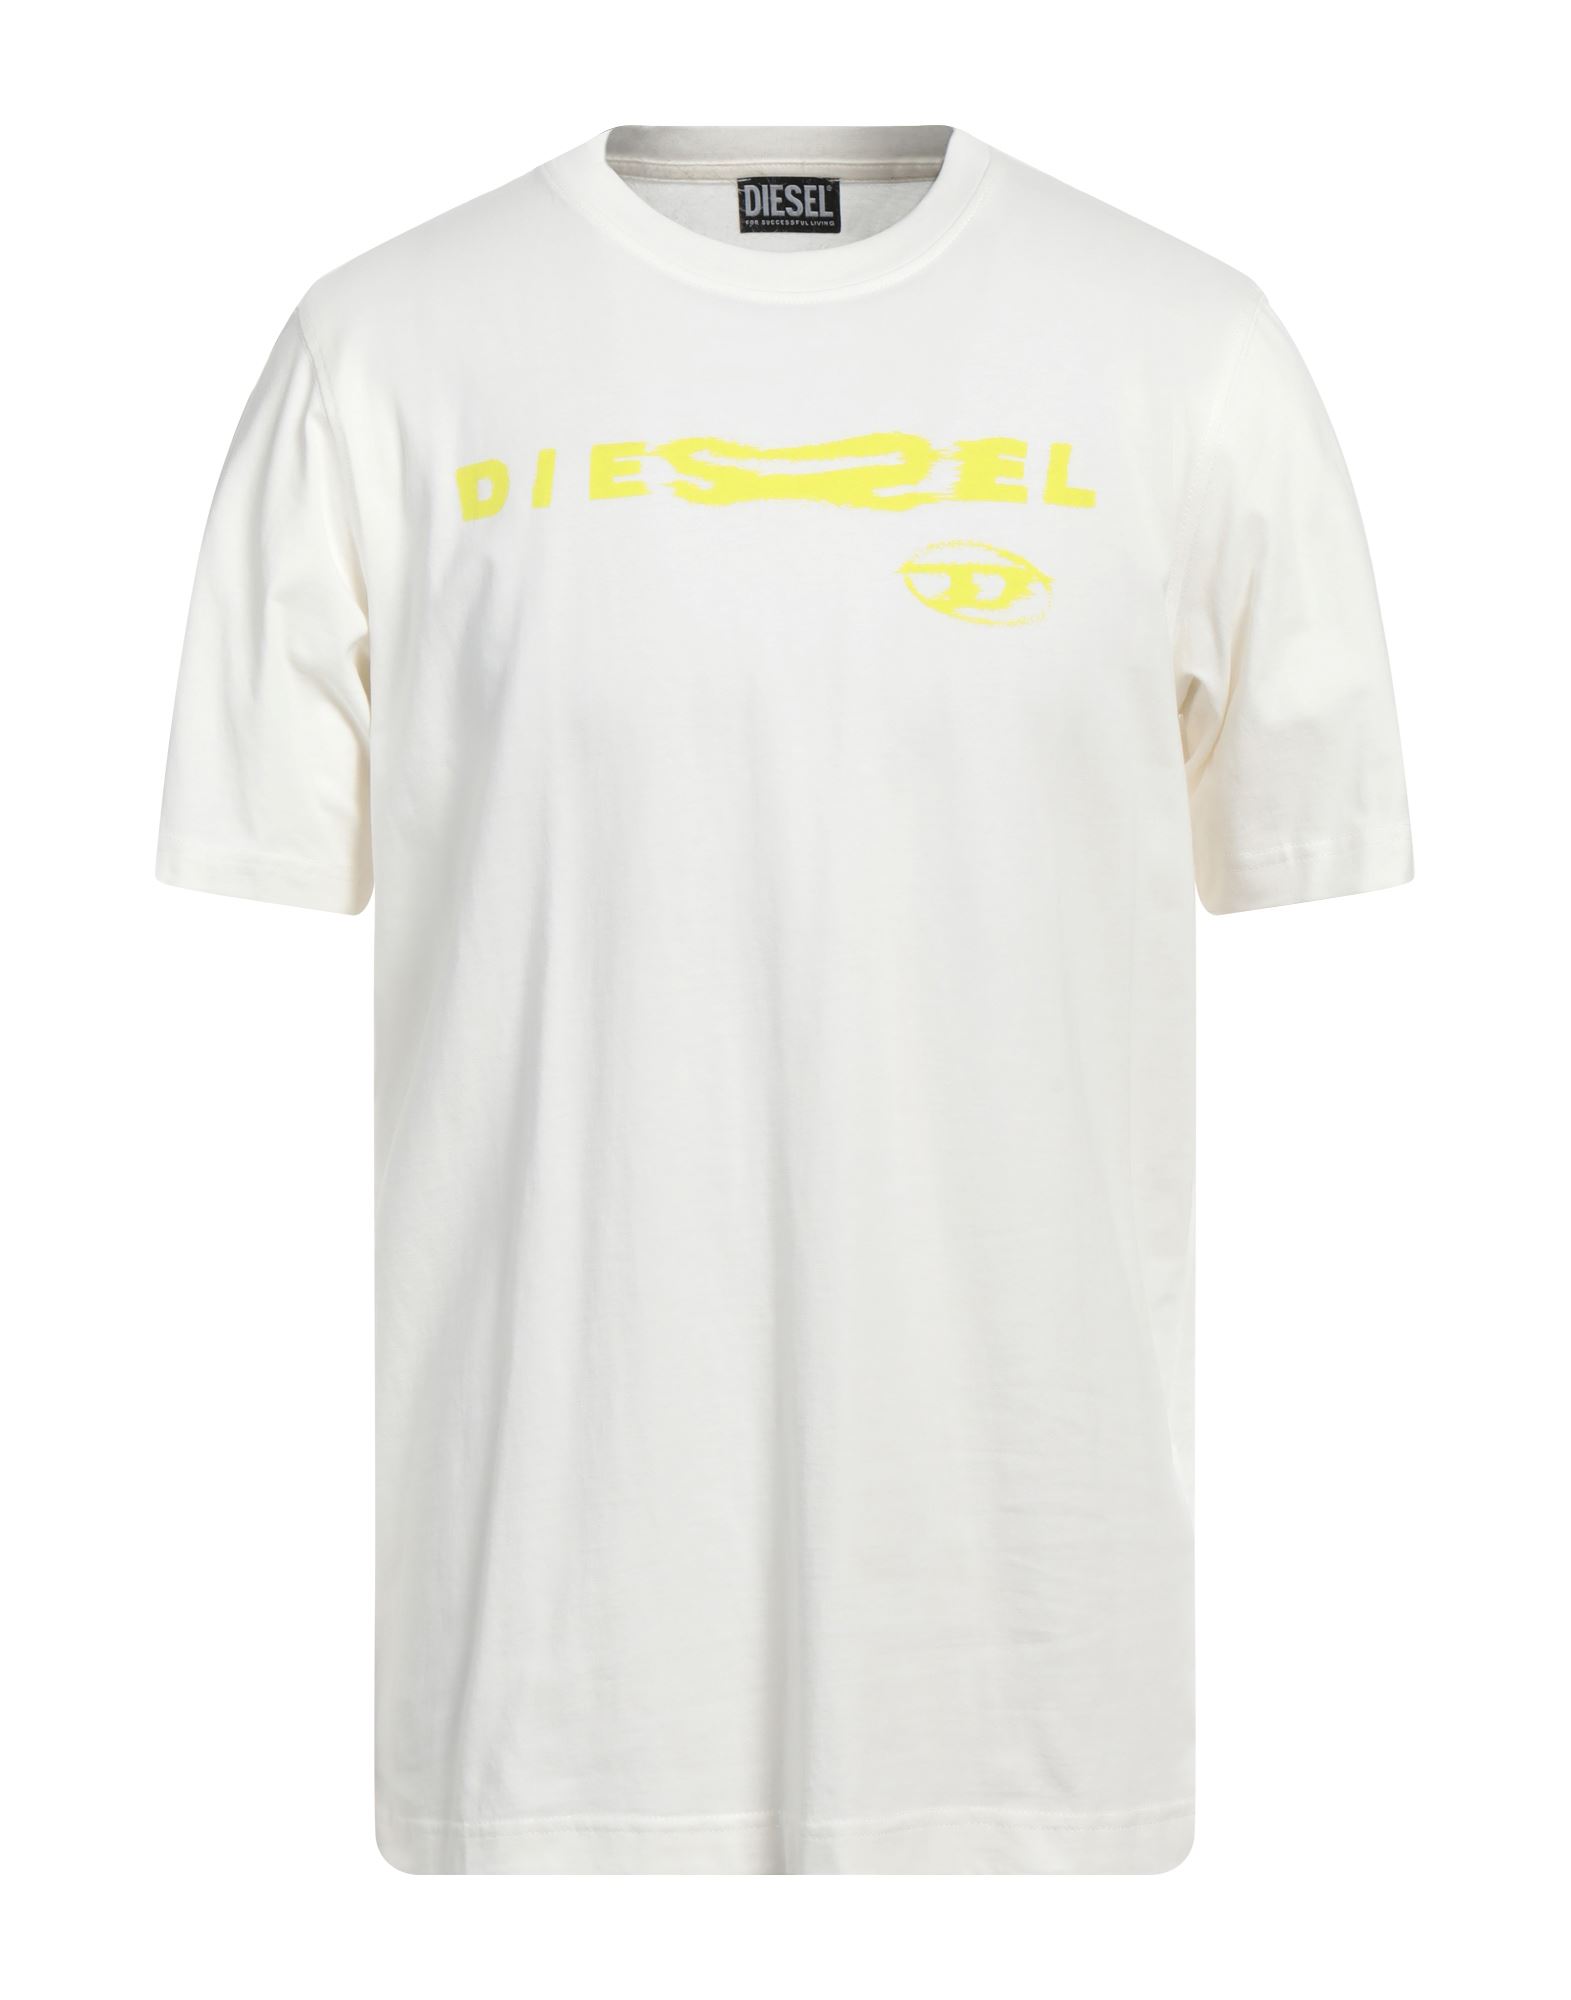 DIESEL T-shirts Herren Elfenbein von DIESEL